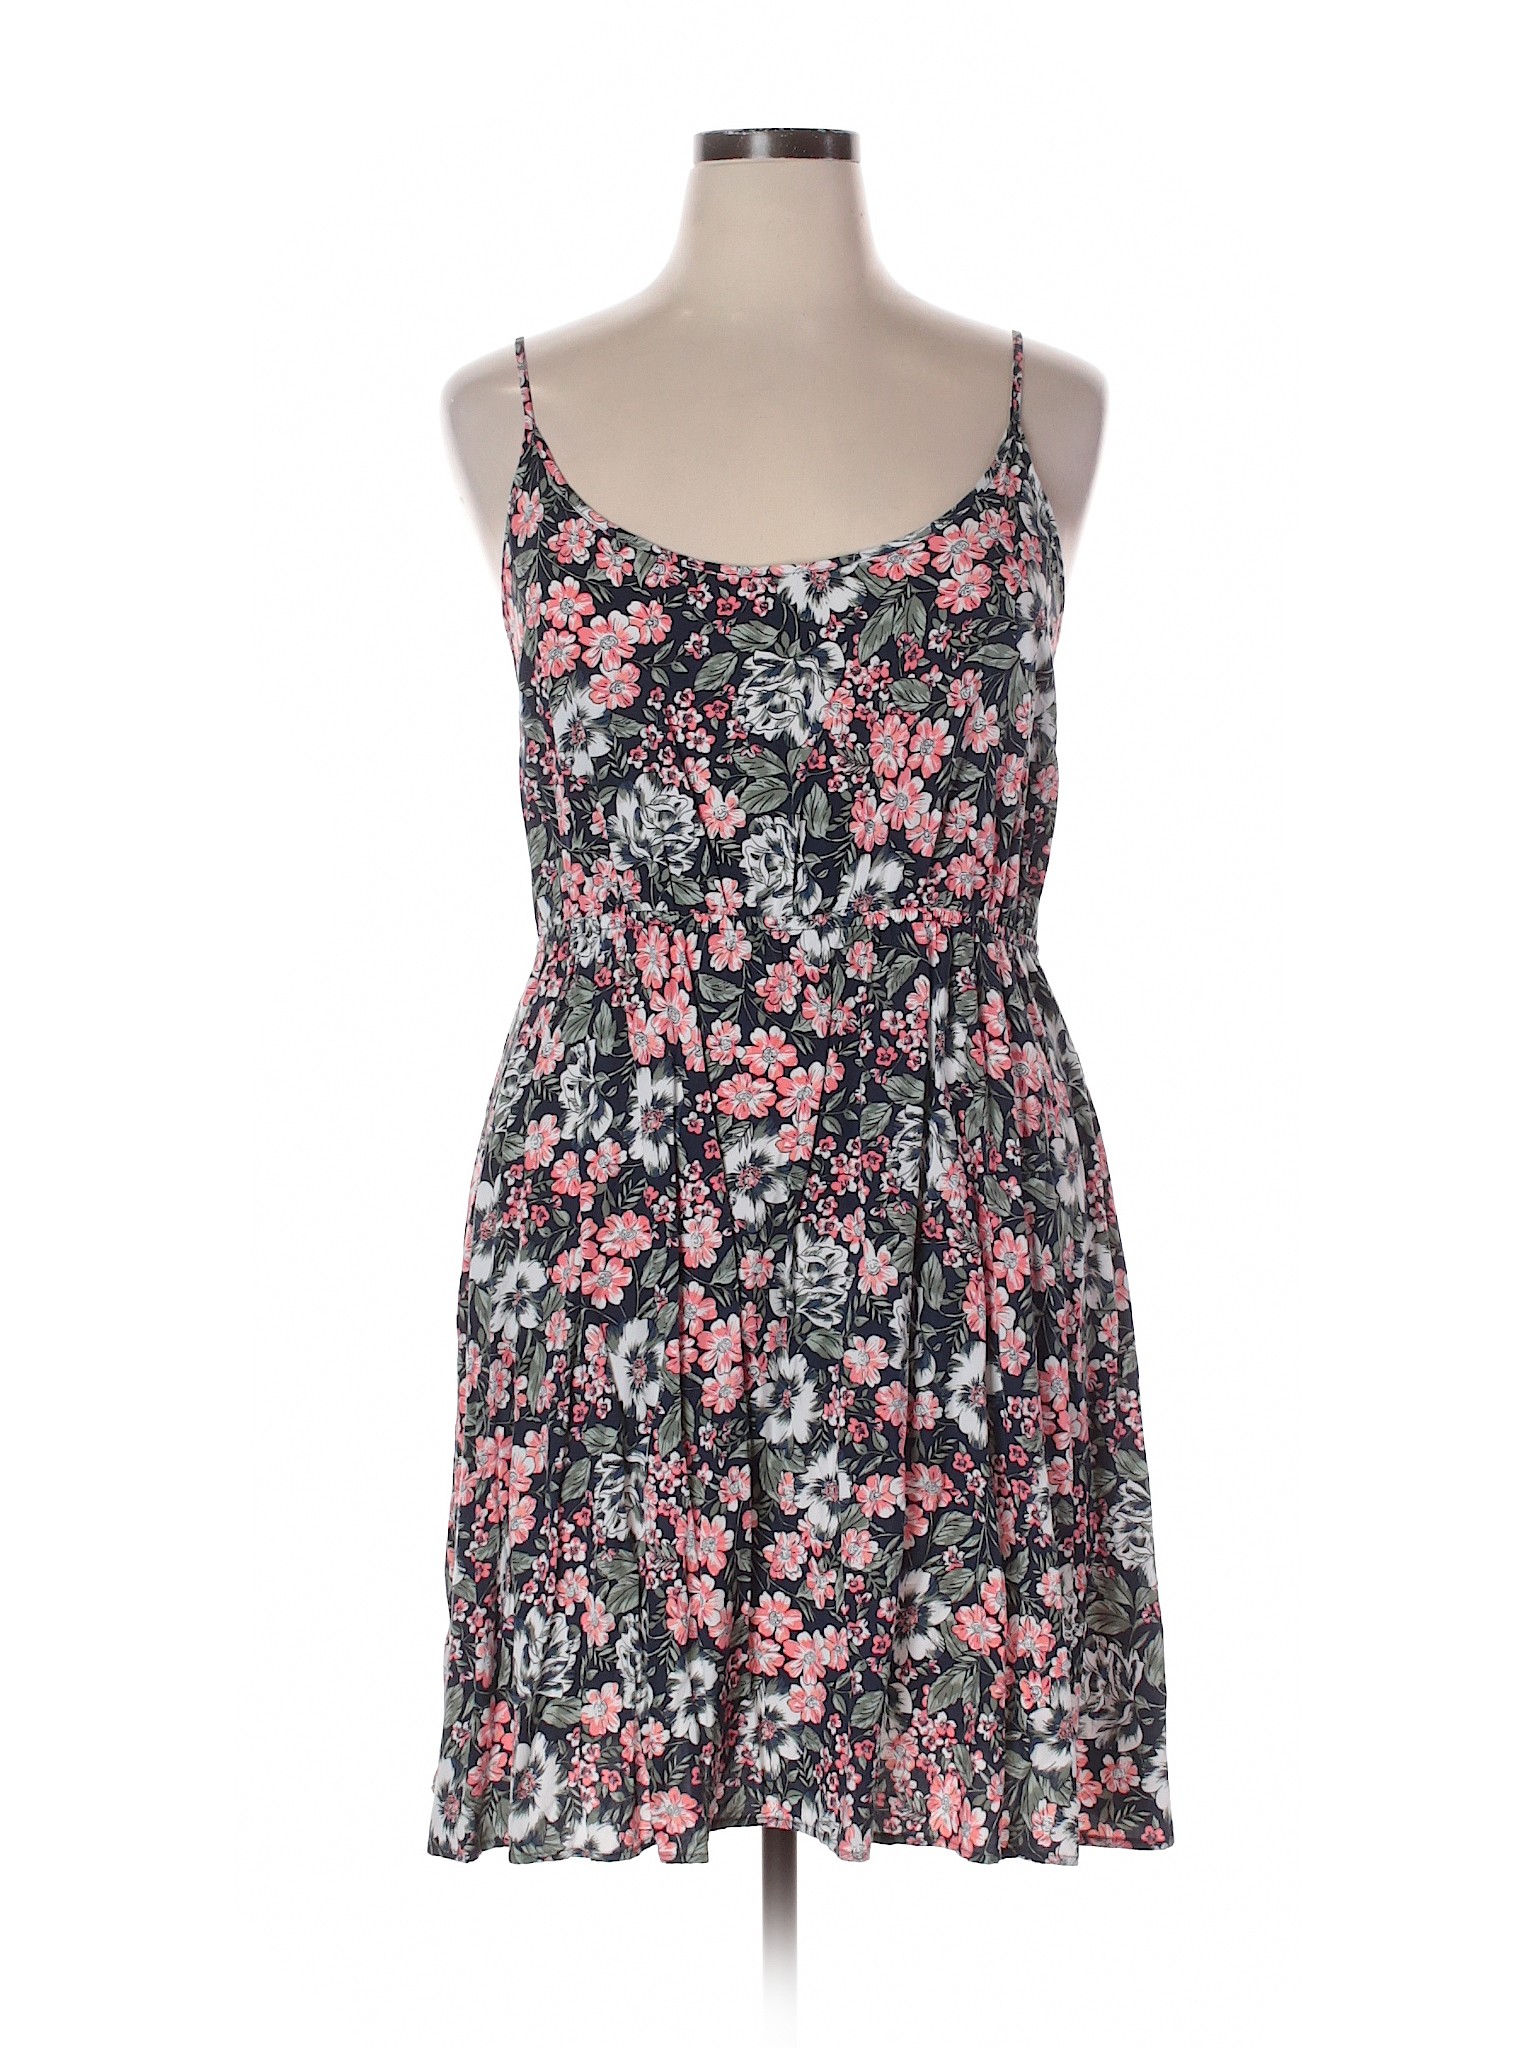 Gap Outlet Women Pink Casual Dress XL | eBay